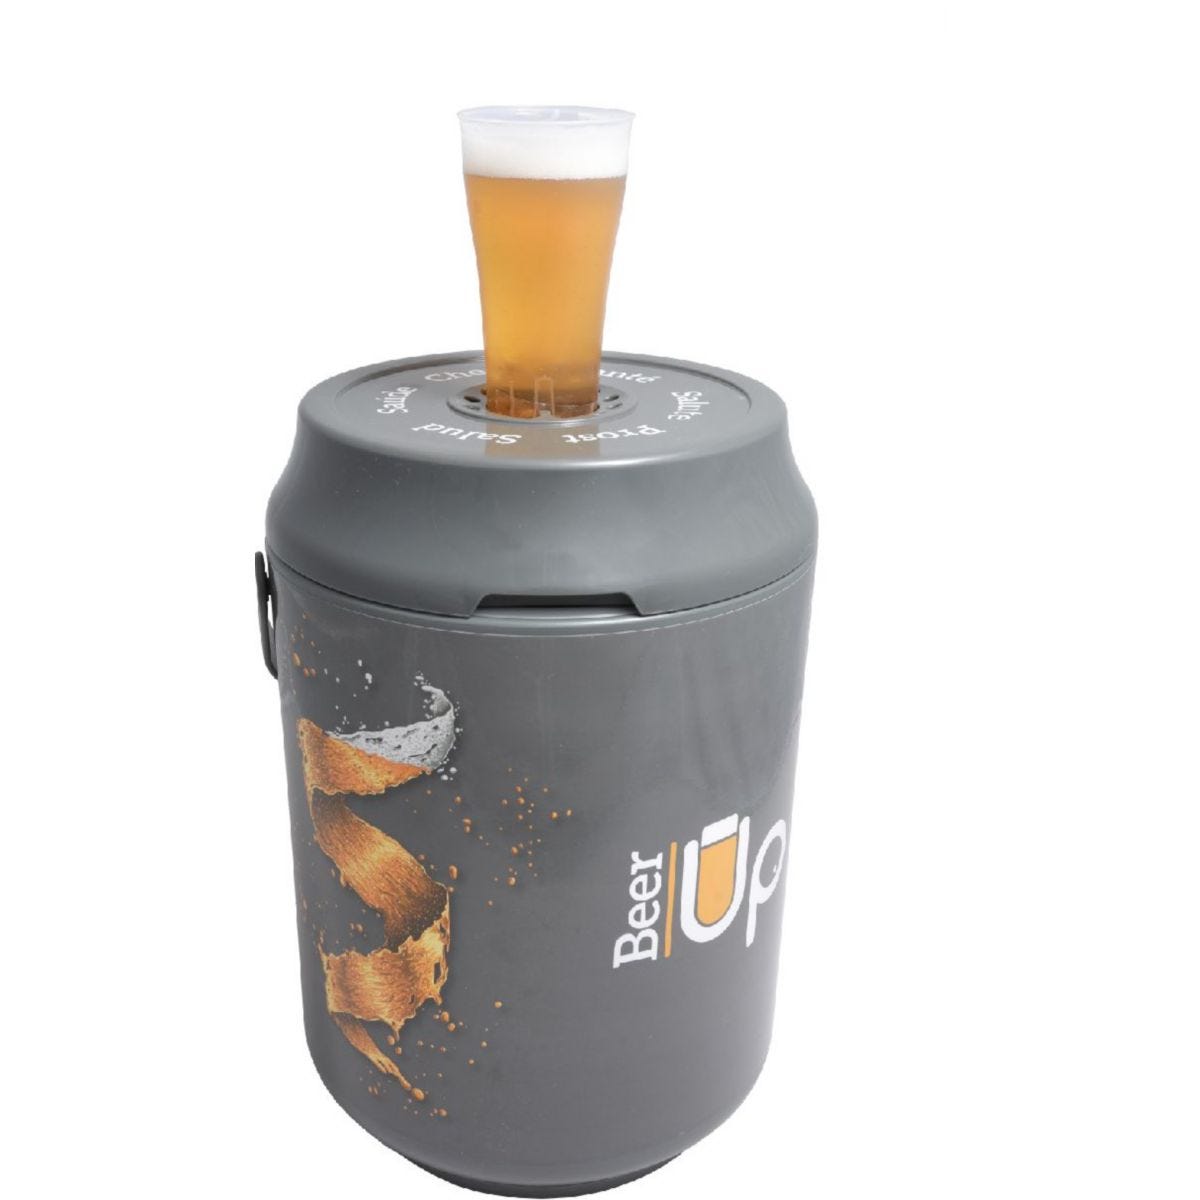 Pompe à bière Beer Up portative avec 10 verres + accessoires +